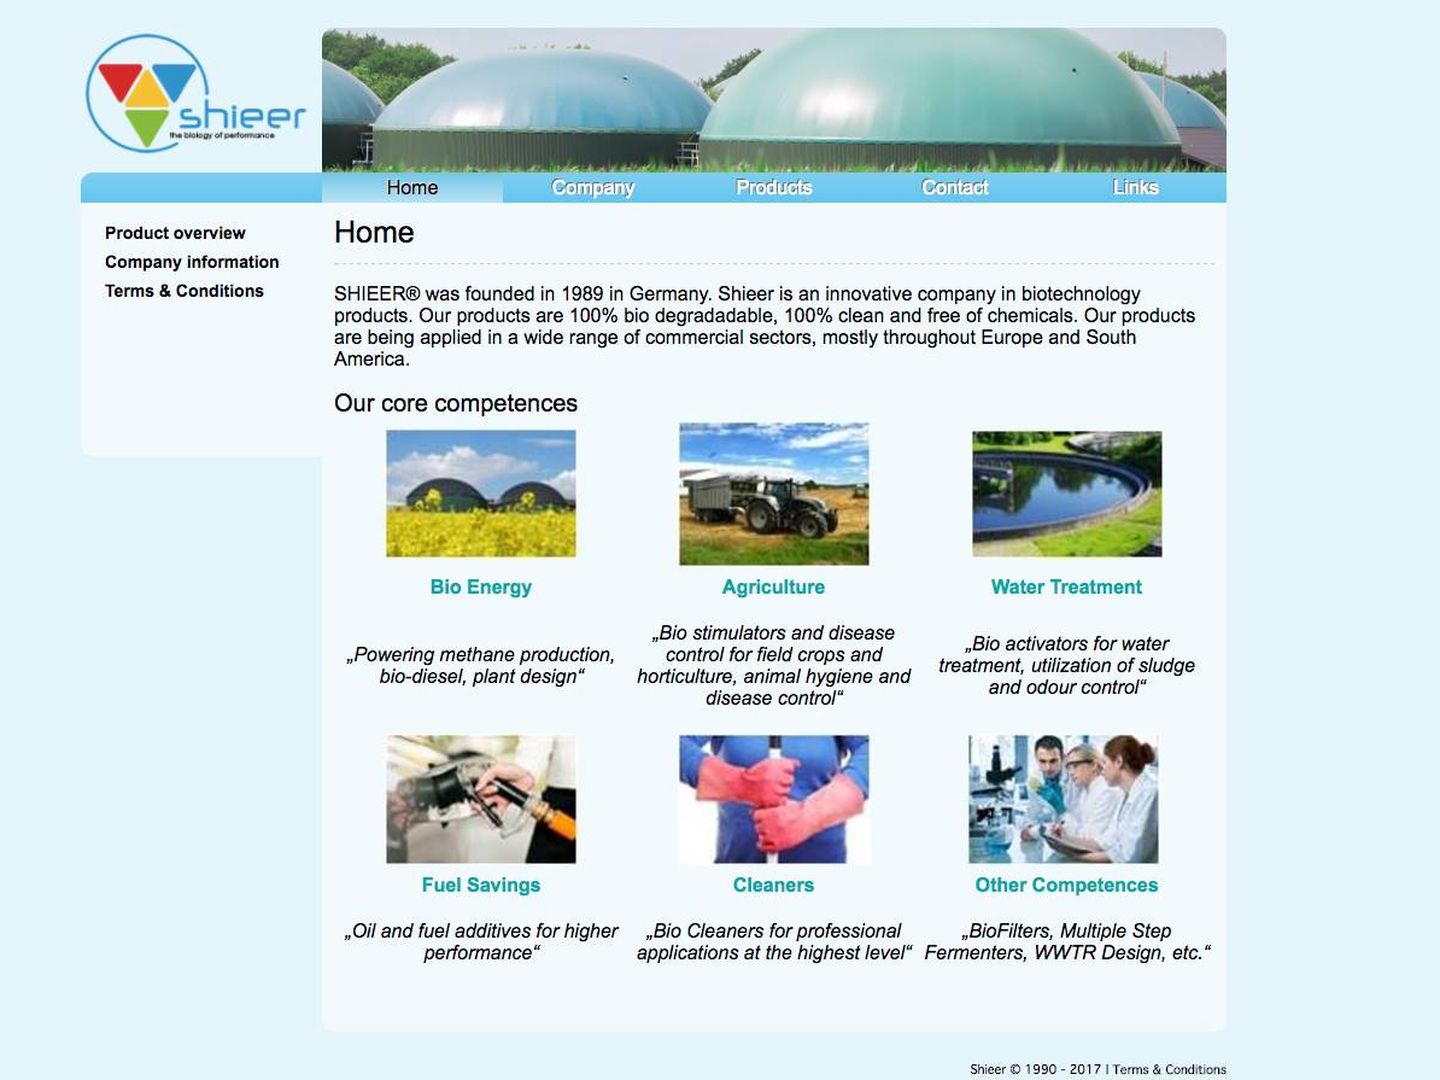  Página web de la compañía Shieer.